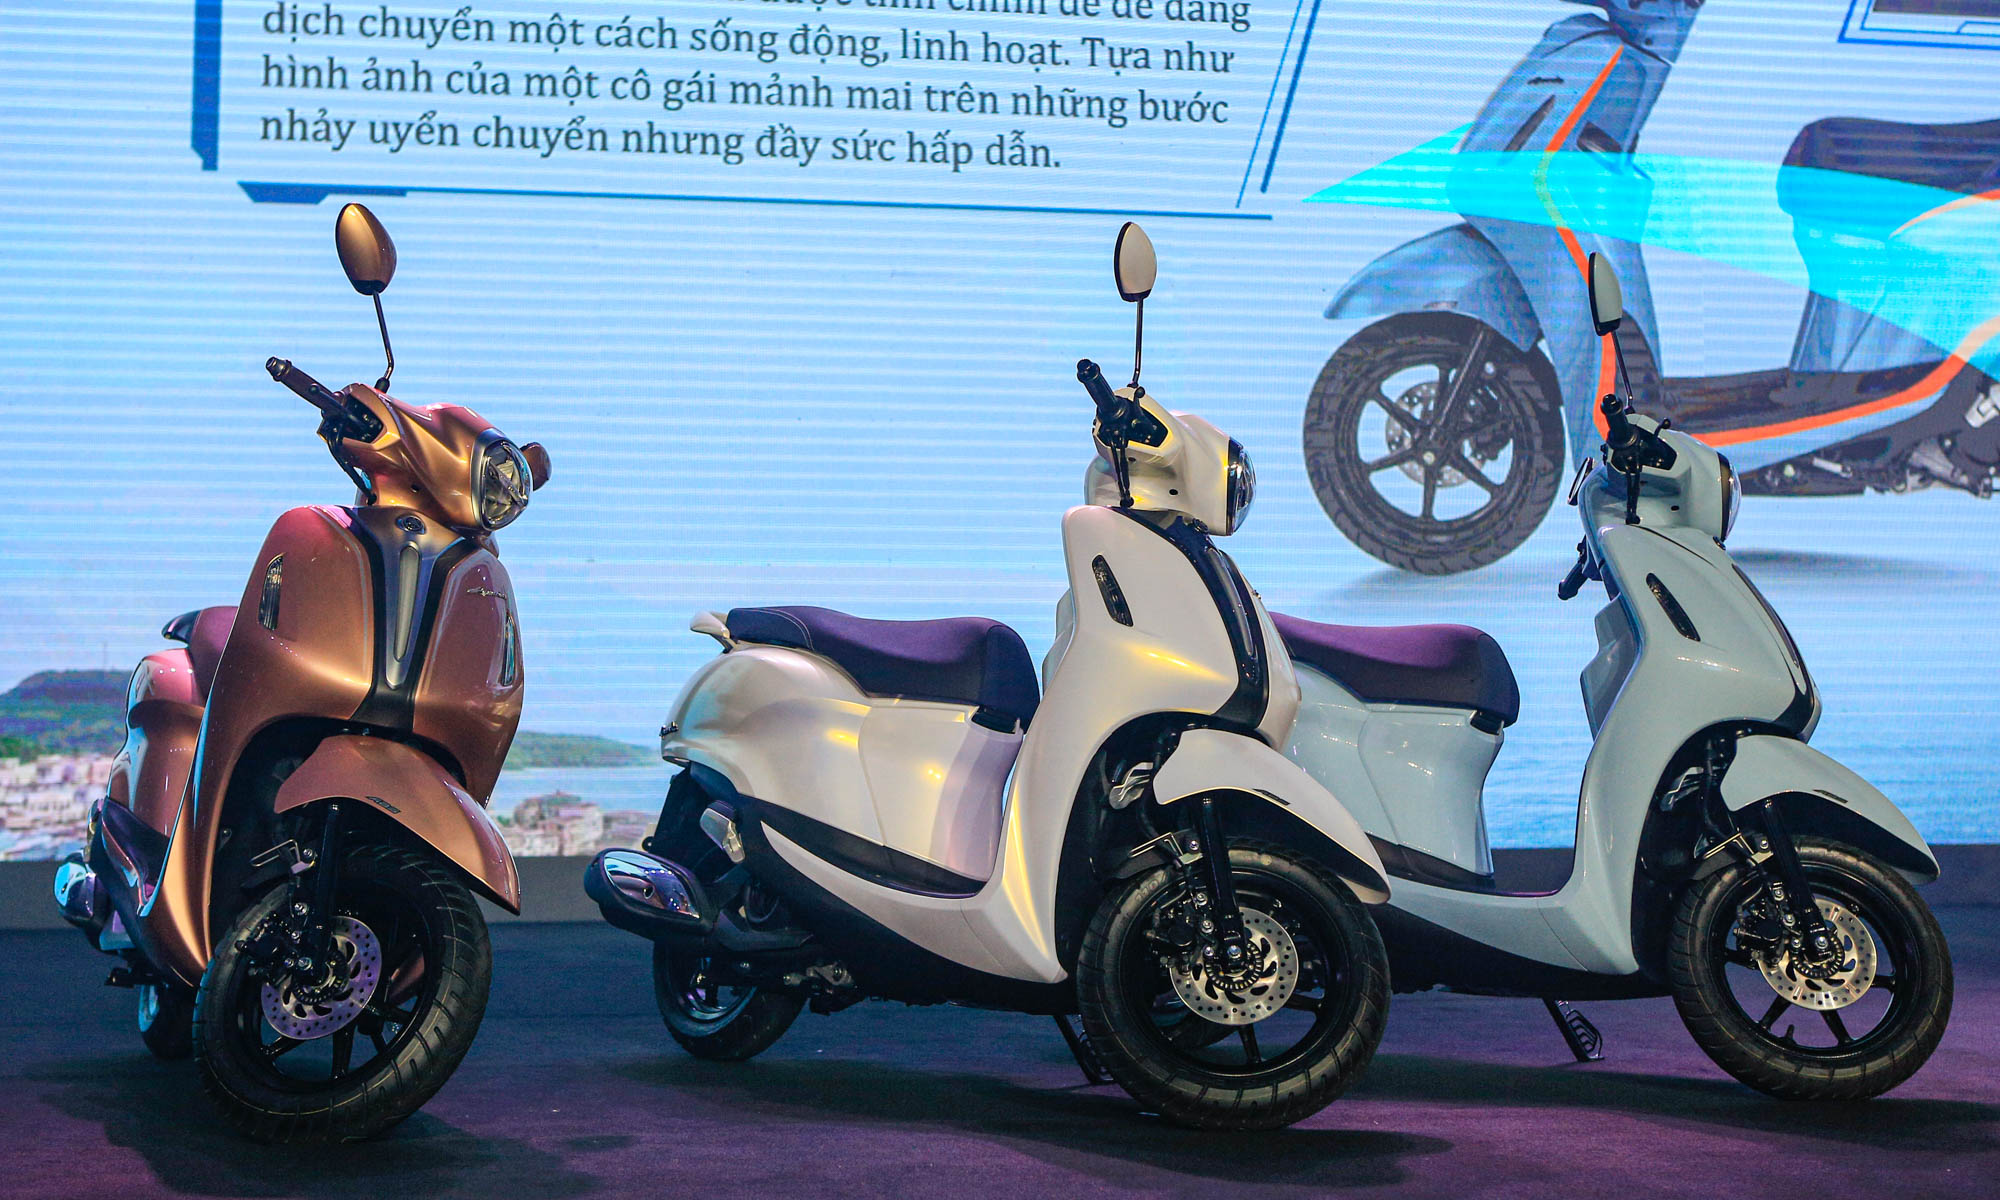 Yamaha Việt Nam giới thiệu 3 mẫu xe mới